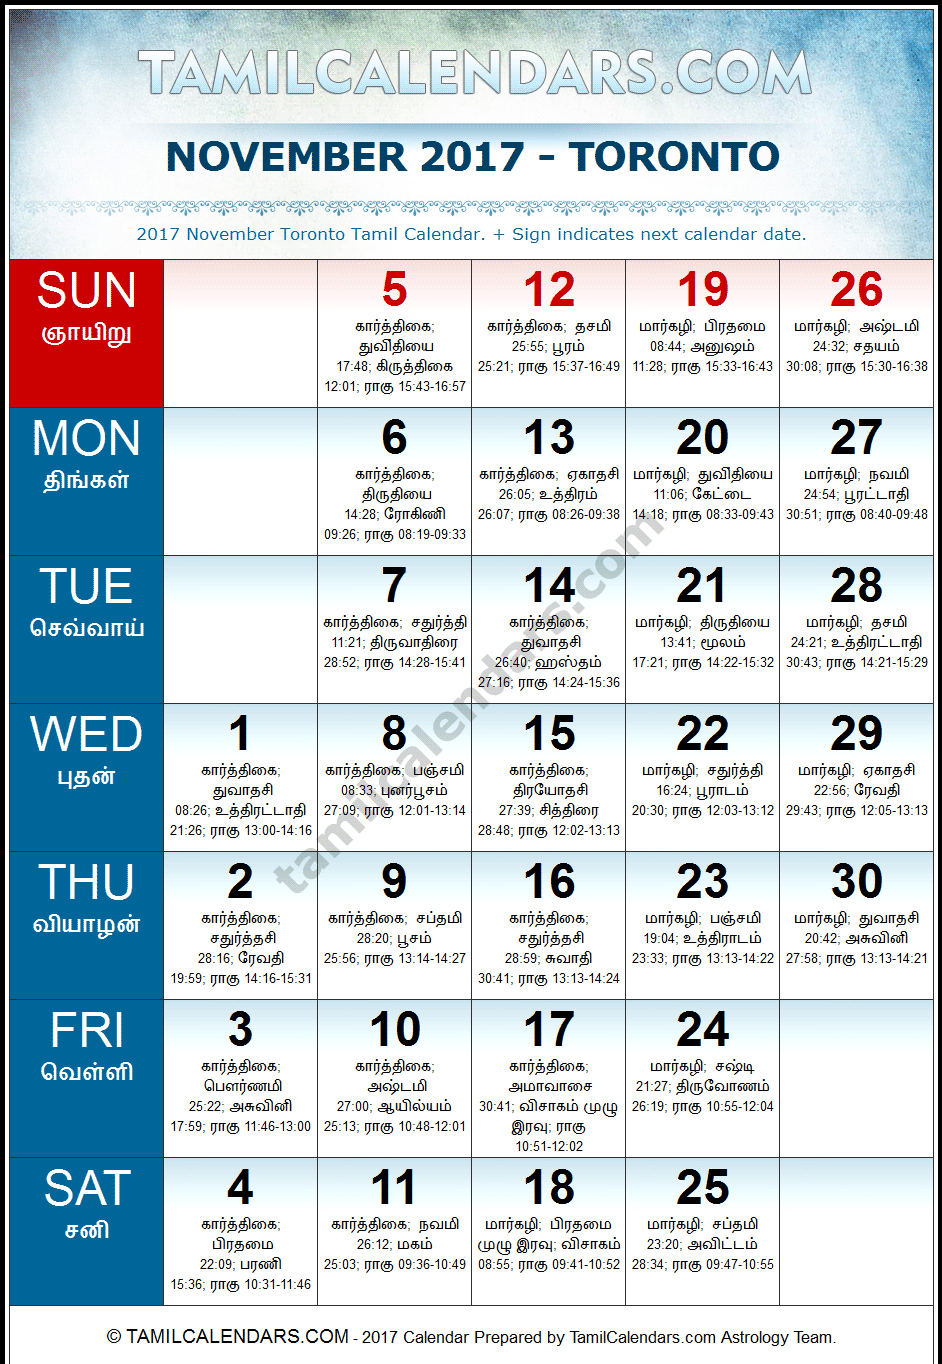 November 2017 Tamil Calendar for Toronto, Canada